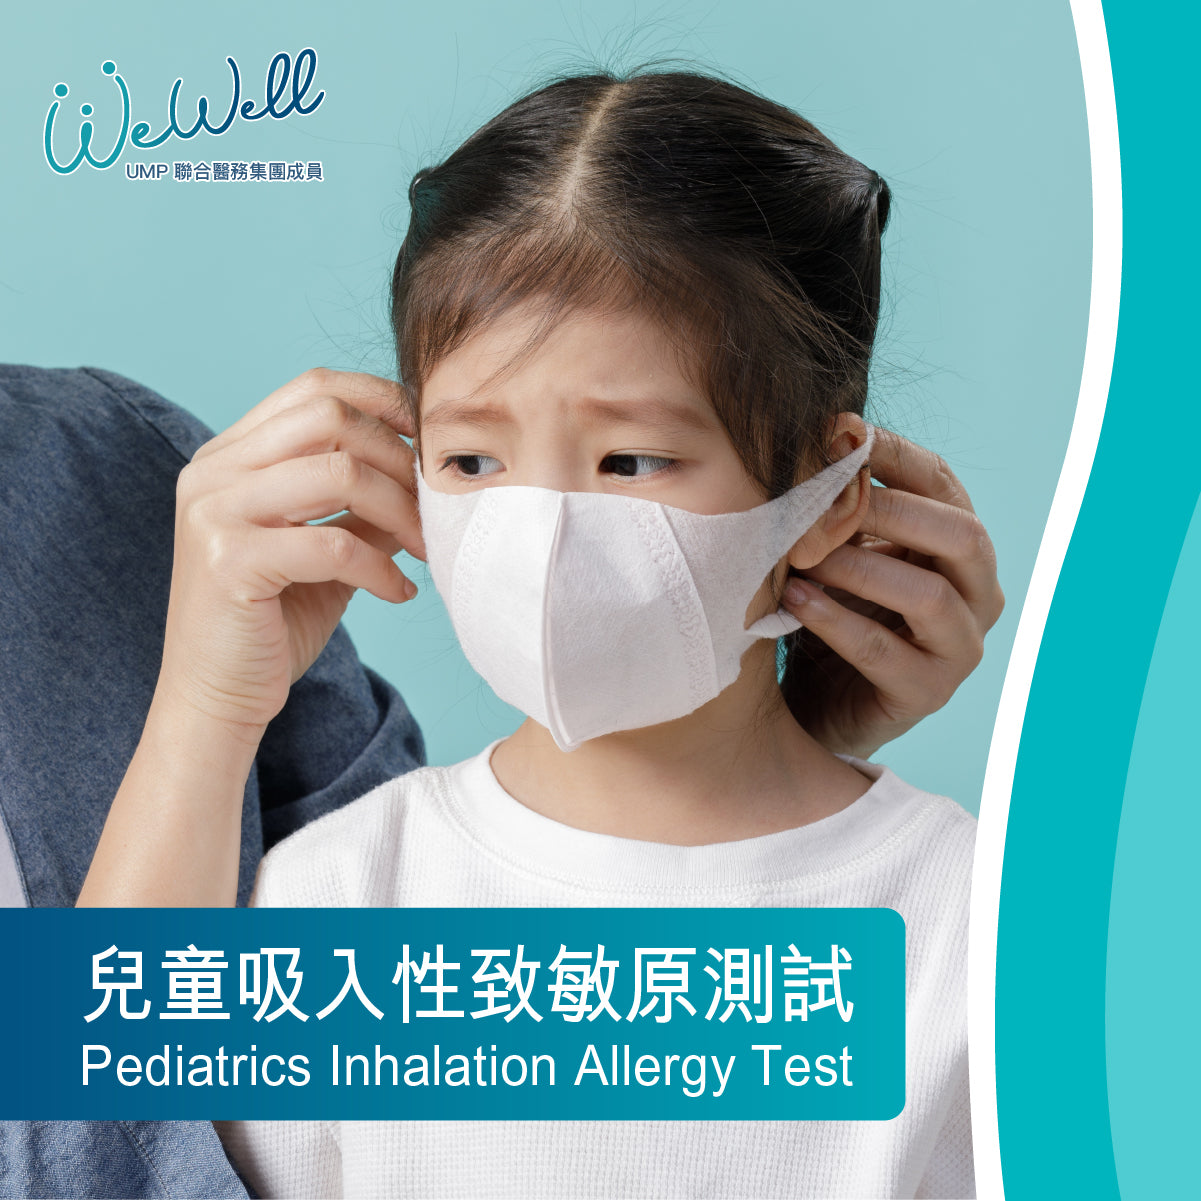 Pediatrics Inhalation Allergy Test (SCH-ANN-05631)